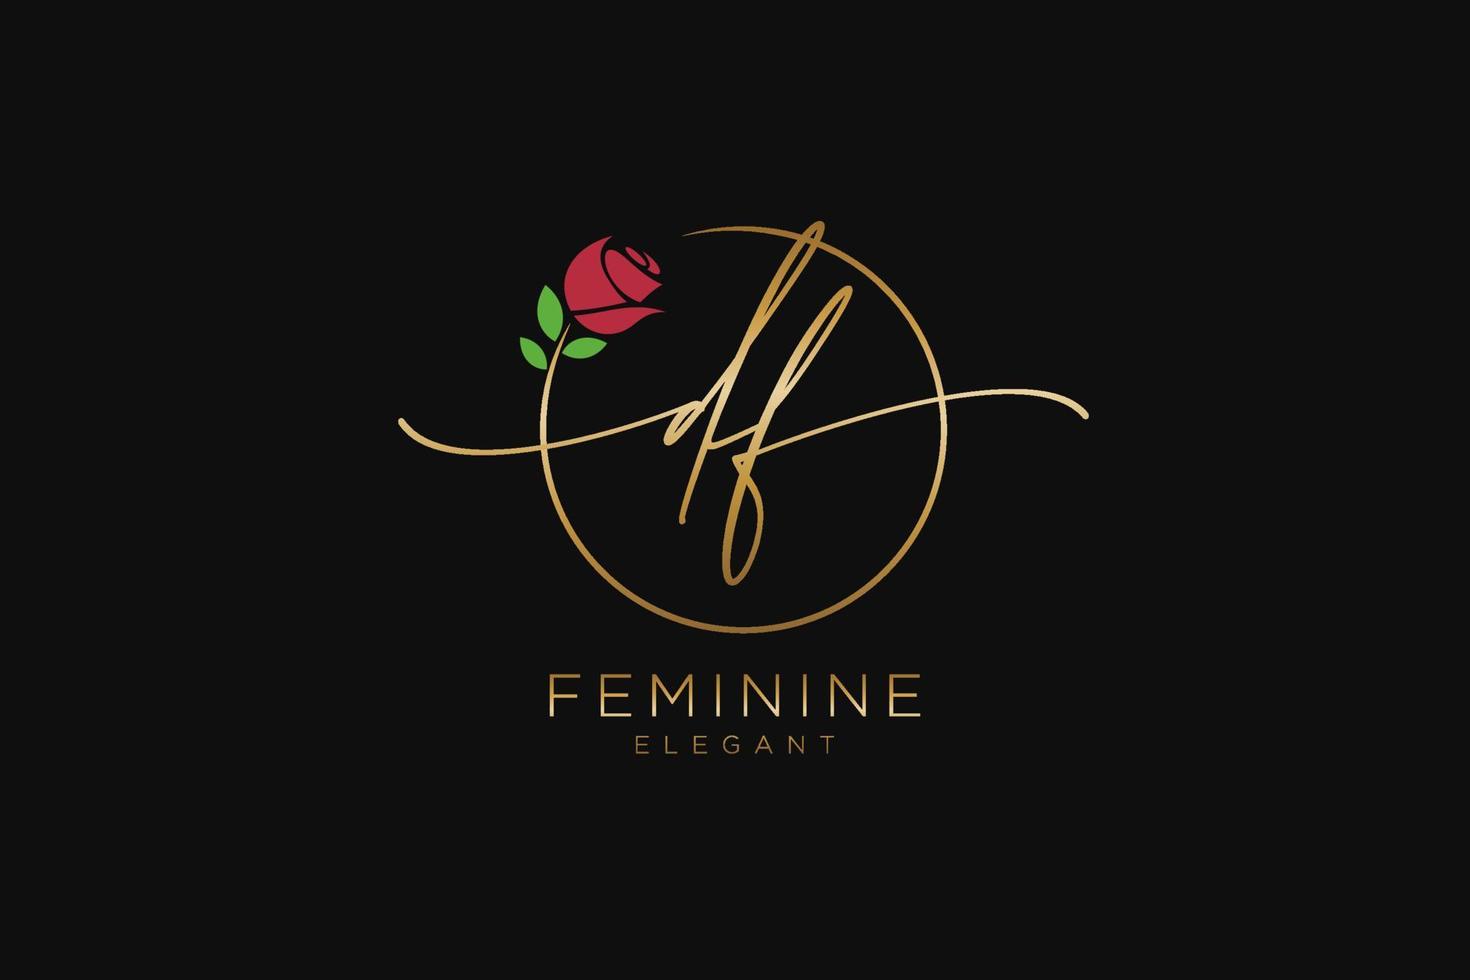 monogramme de beauté du logo féminin initial df et création de logo élégante, logo manuscrit de la signature initiale, mariage, mode, floral et botanique avec modèle créatif. vecteur